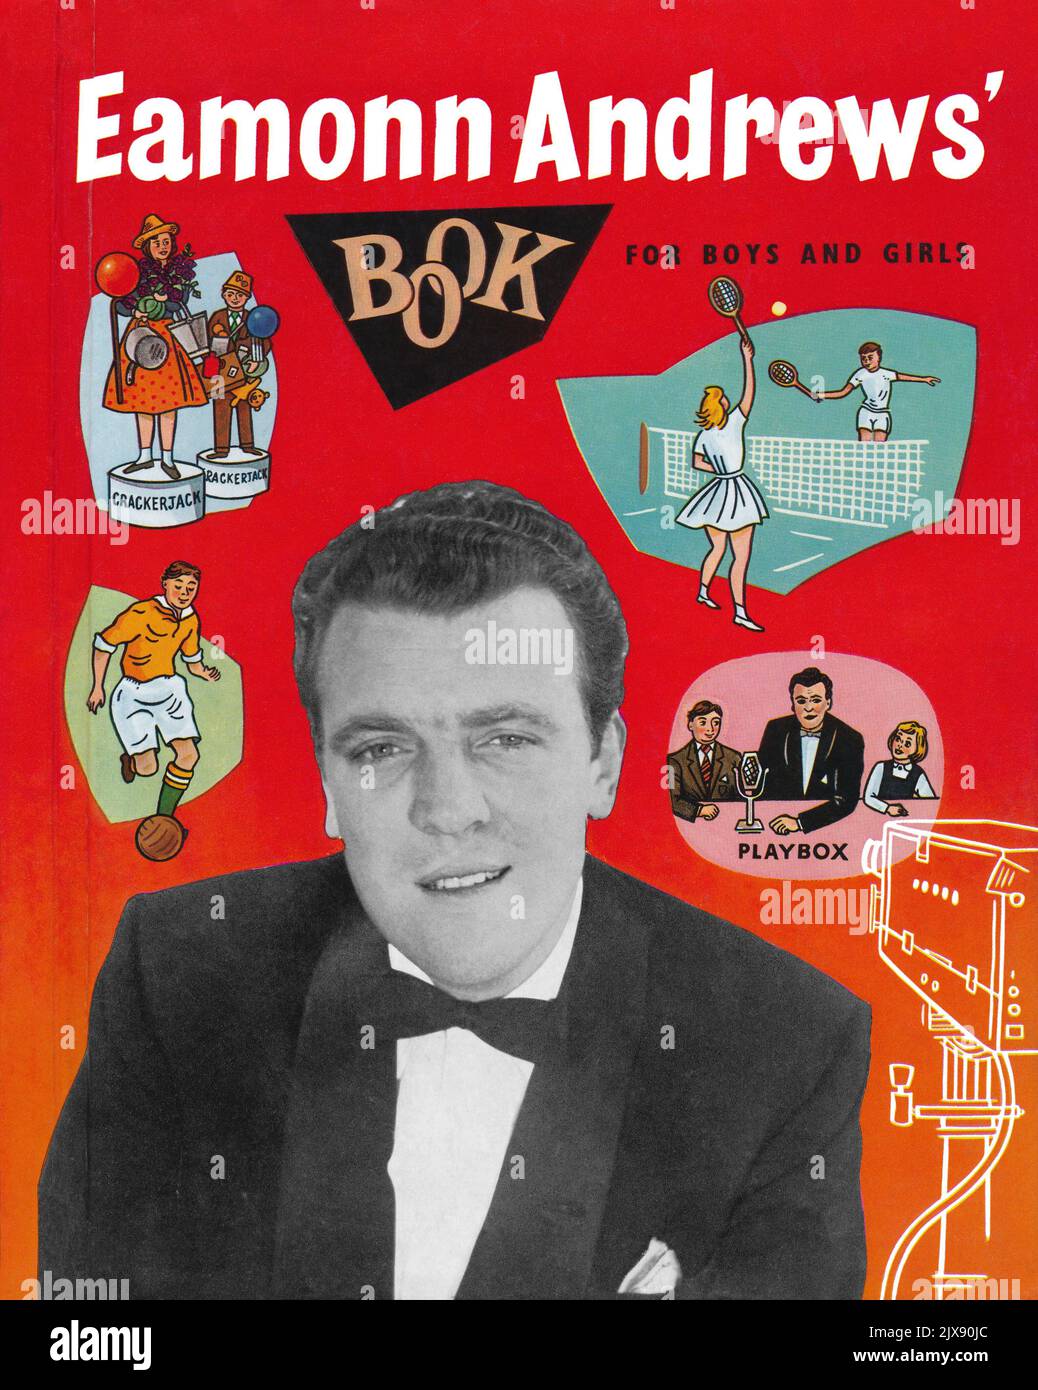 Frontcover von Eamonn Andrews' Book for Boys and Girls, ein Tie-in für die Fernsehsendung Crackerjack und die Radiosendung Playbox. Veröffentlicht im Jahr 1956. Stockfoto